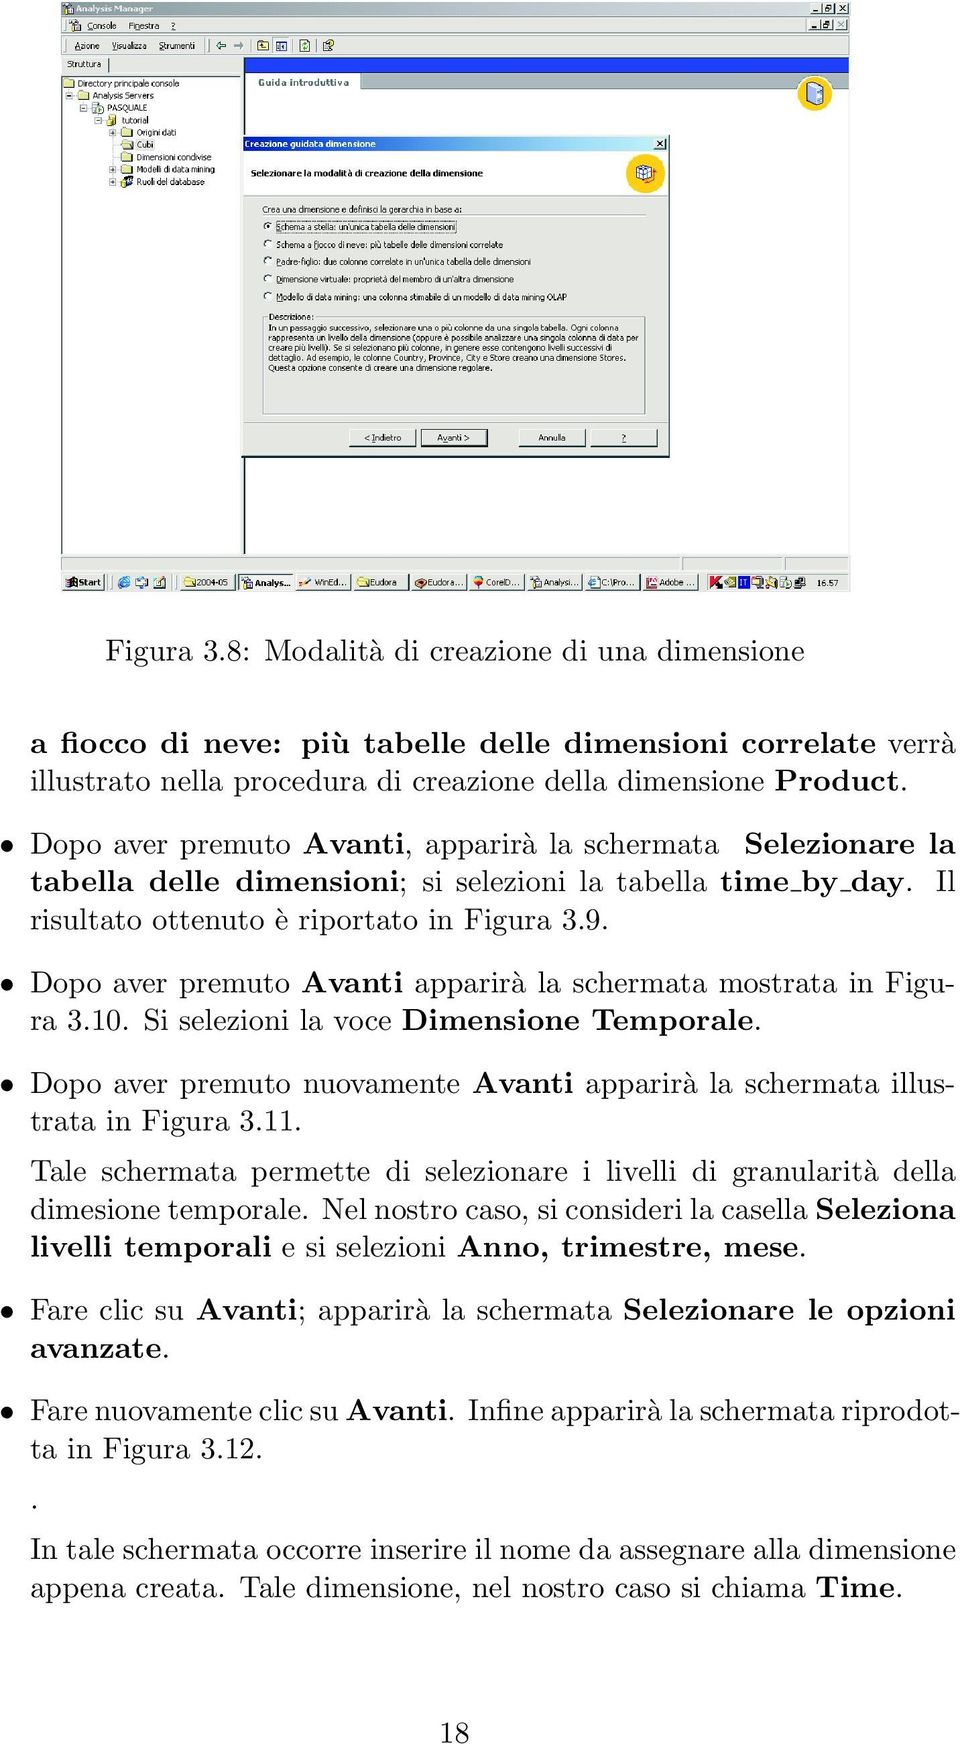 Dopo aver premuto Avanti apparirà la schermata mostrata in Figura 3.10. Si selezioni la voce Dimensione Temporale. Dopo aver premuto nuovamente Avanti apparirà la schermata illustrata in Figura 3.11.